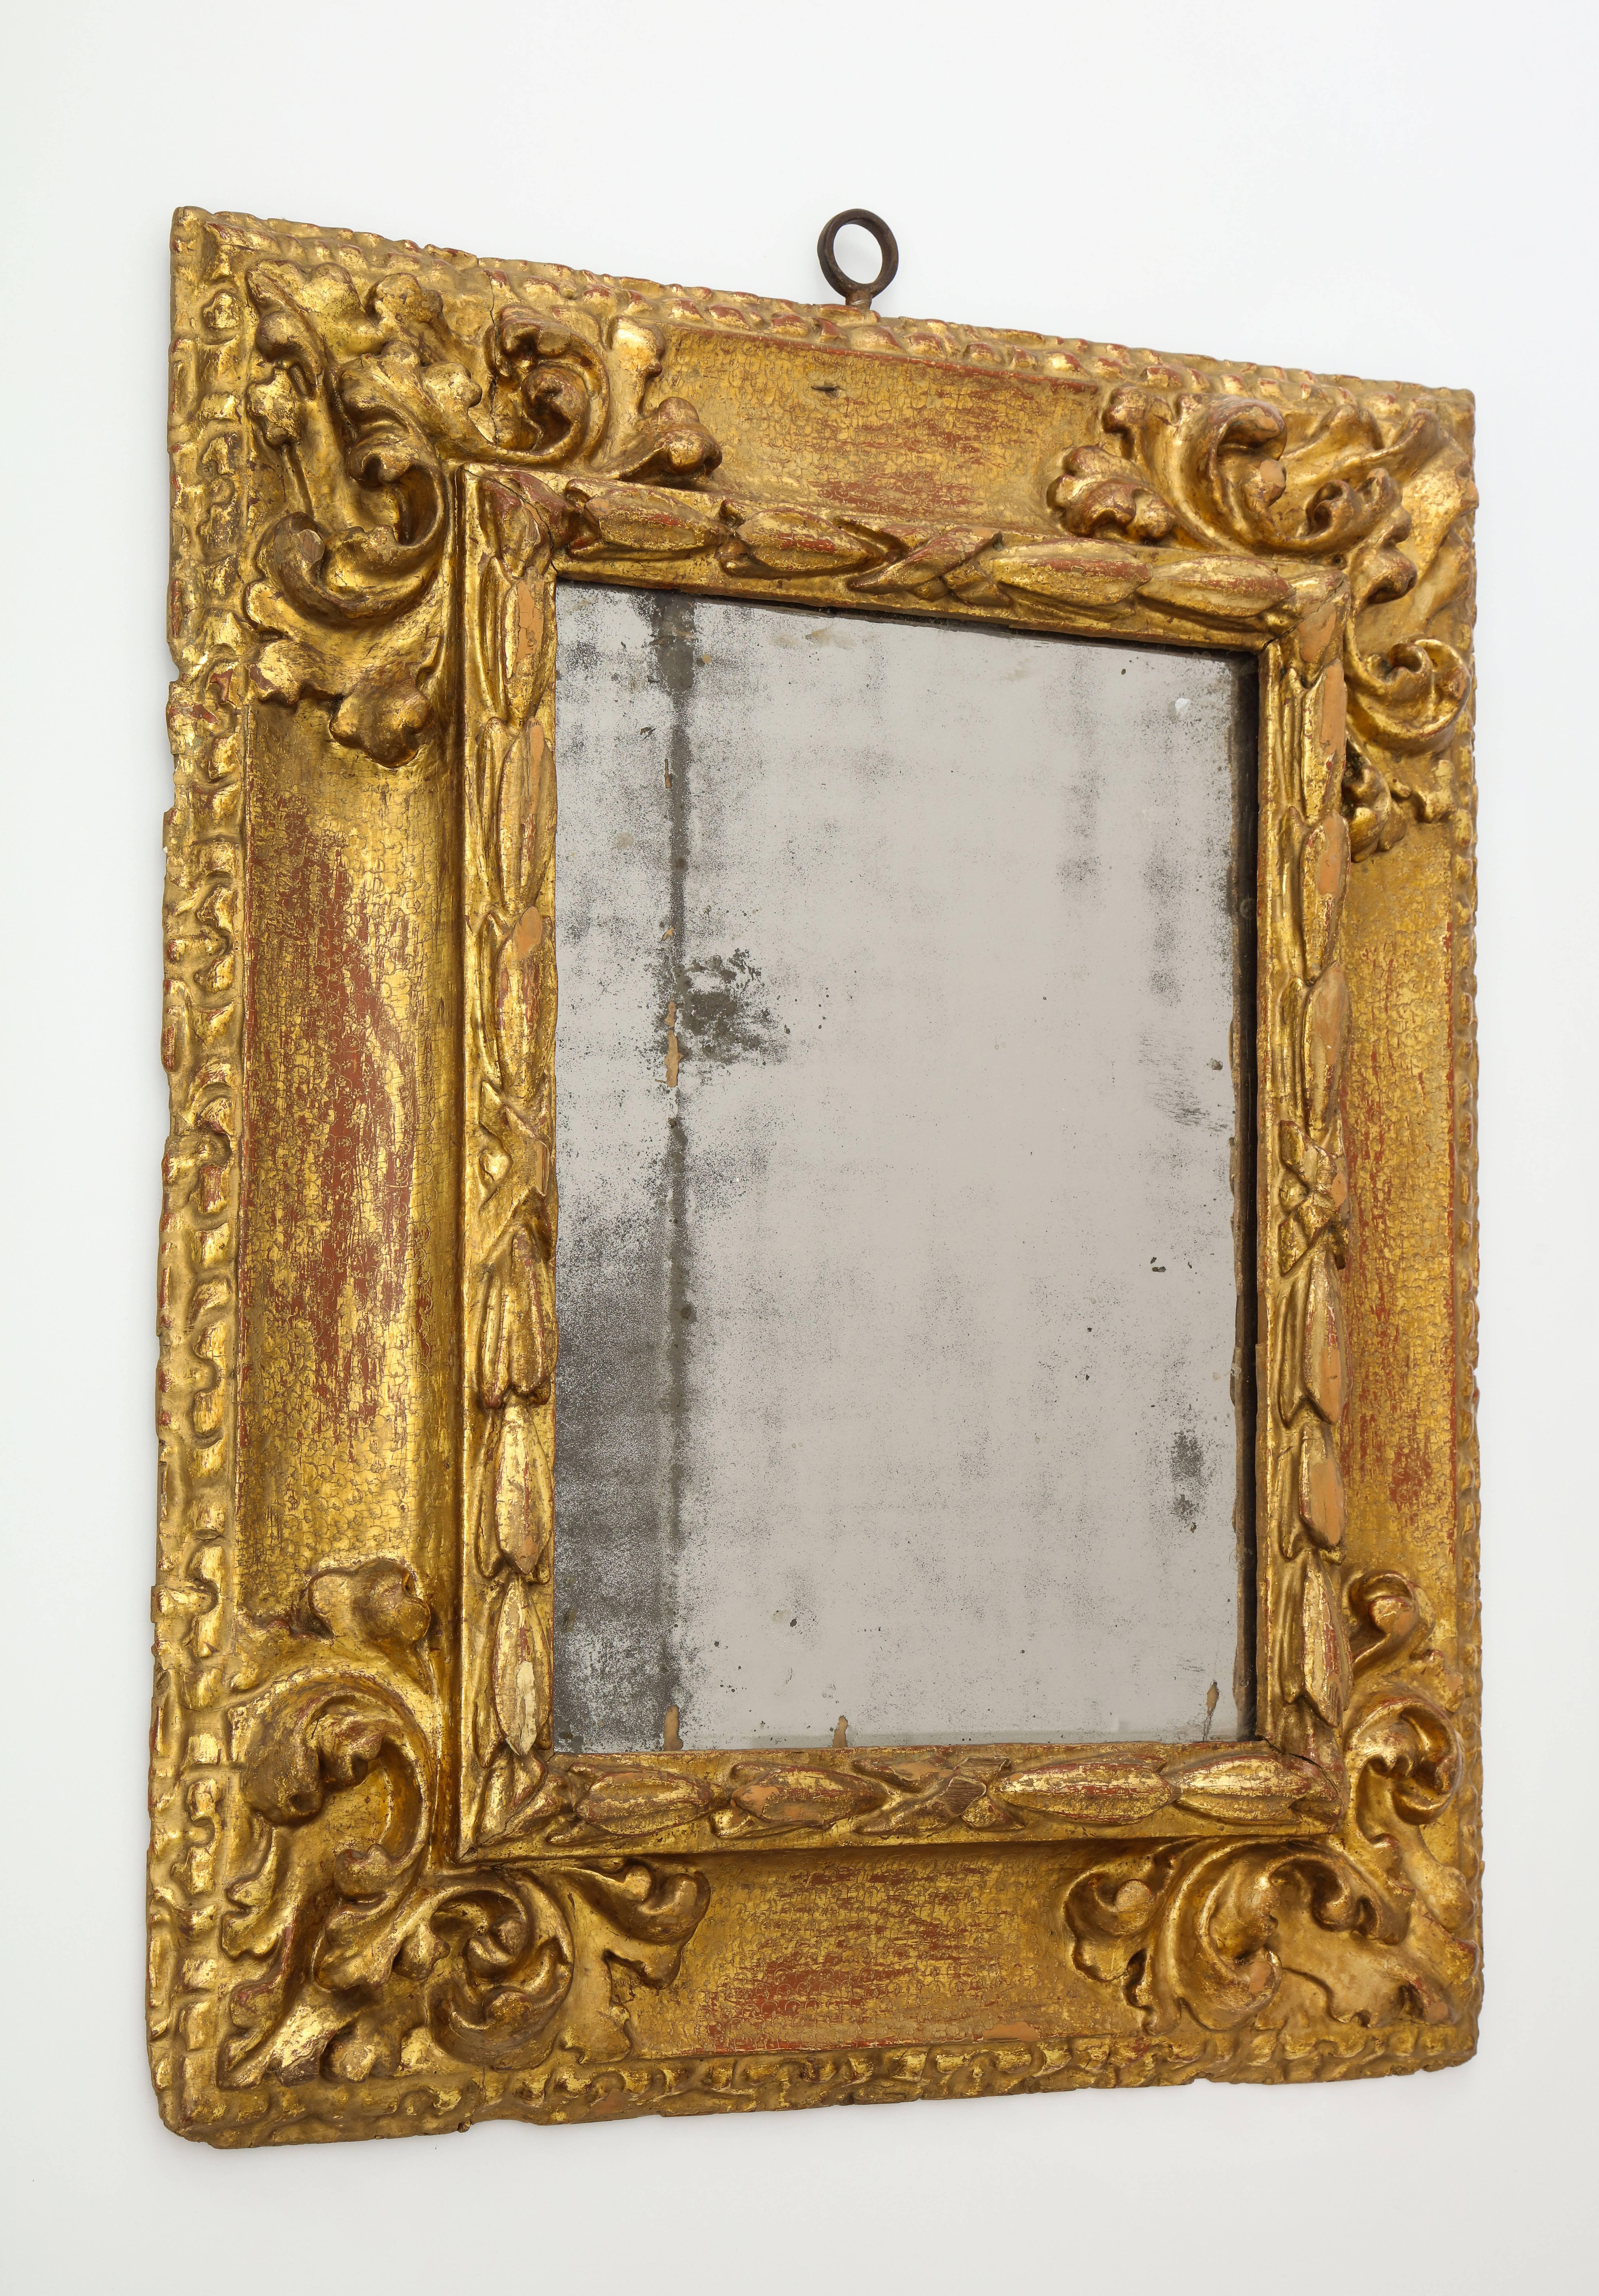 Ein außergewöhnlicher geschnitzter und vergoldeter spanischer Barock-Spiegelrahmen mit rückseitigem Profil; die Hohlkehle ist mit schuppenförmigen Punzierungen verziert. 
Südspanien, ca. 1650-1700 

Spanische Rahmen mit umgekehrtem Profil (d. h.